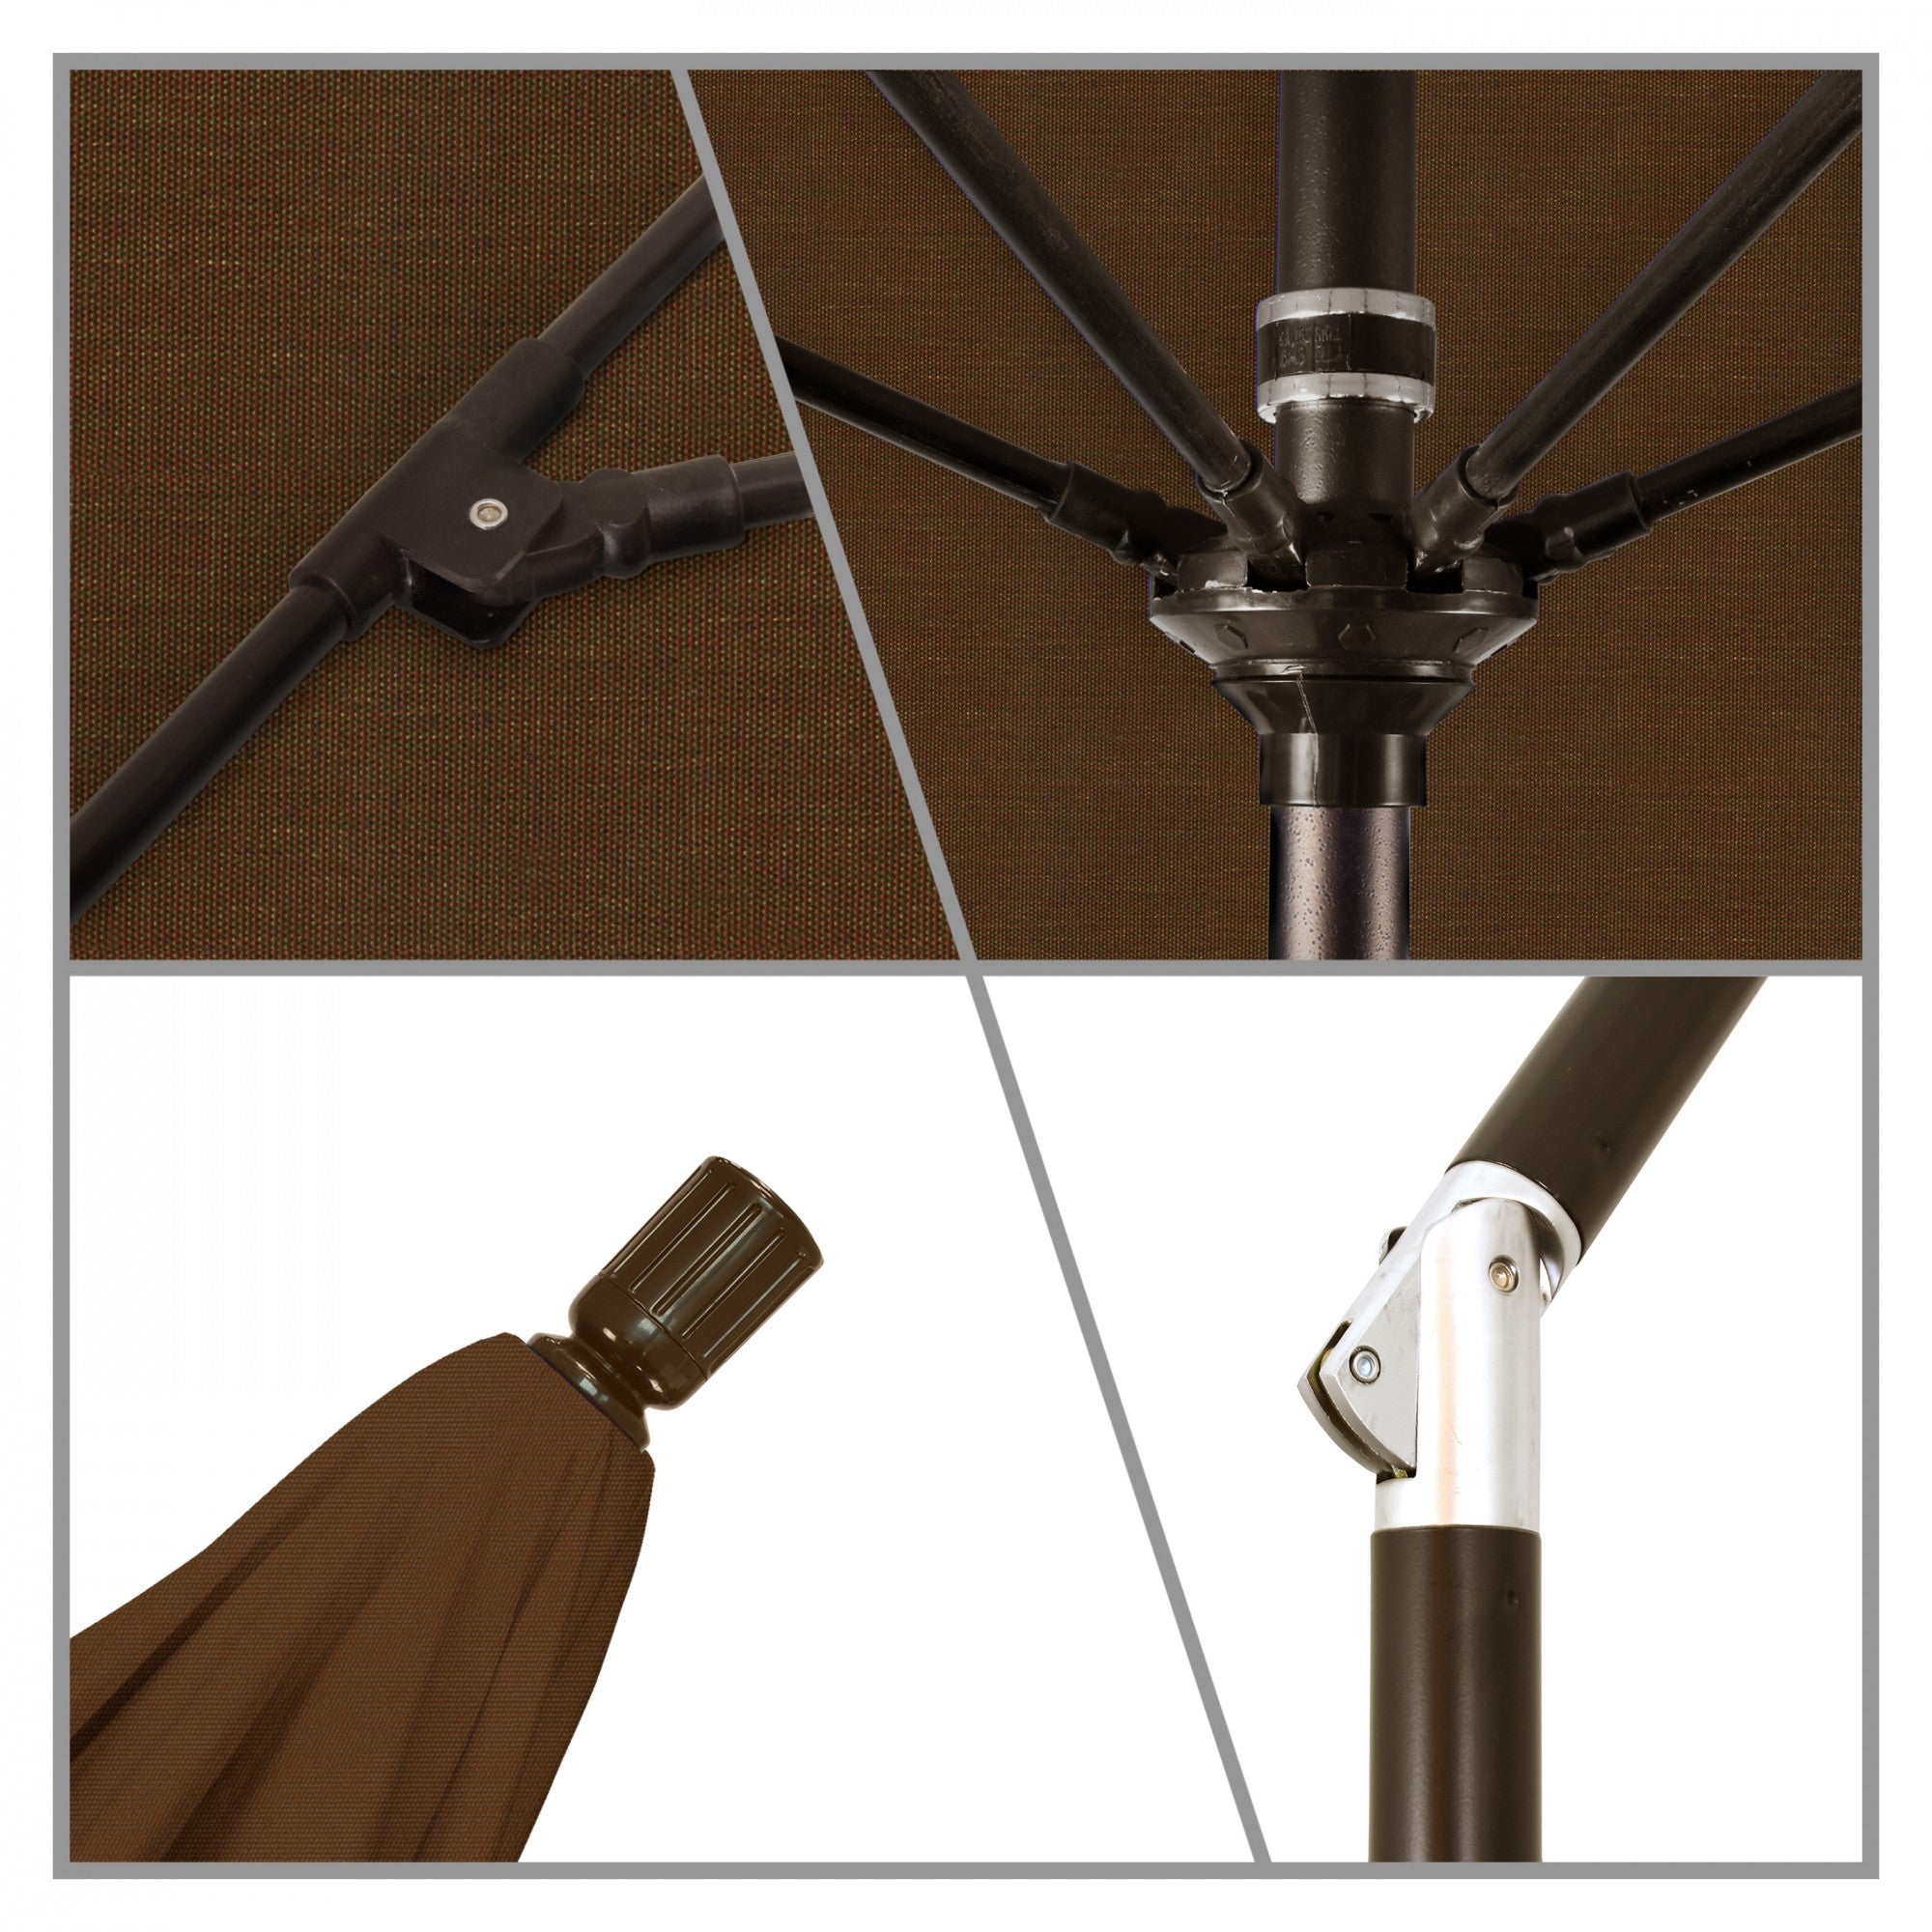 California Umbrella - 9' - Patio Umbrella Umbrella - Aluminum Pole - Teak - Olefin - GSCUF908117-F71